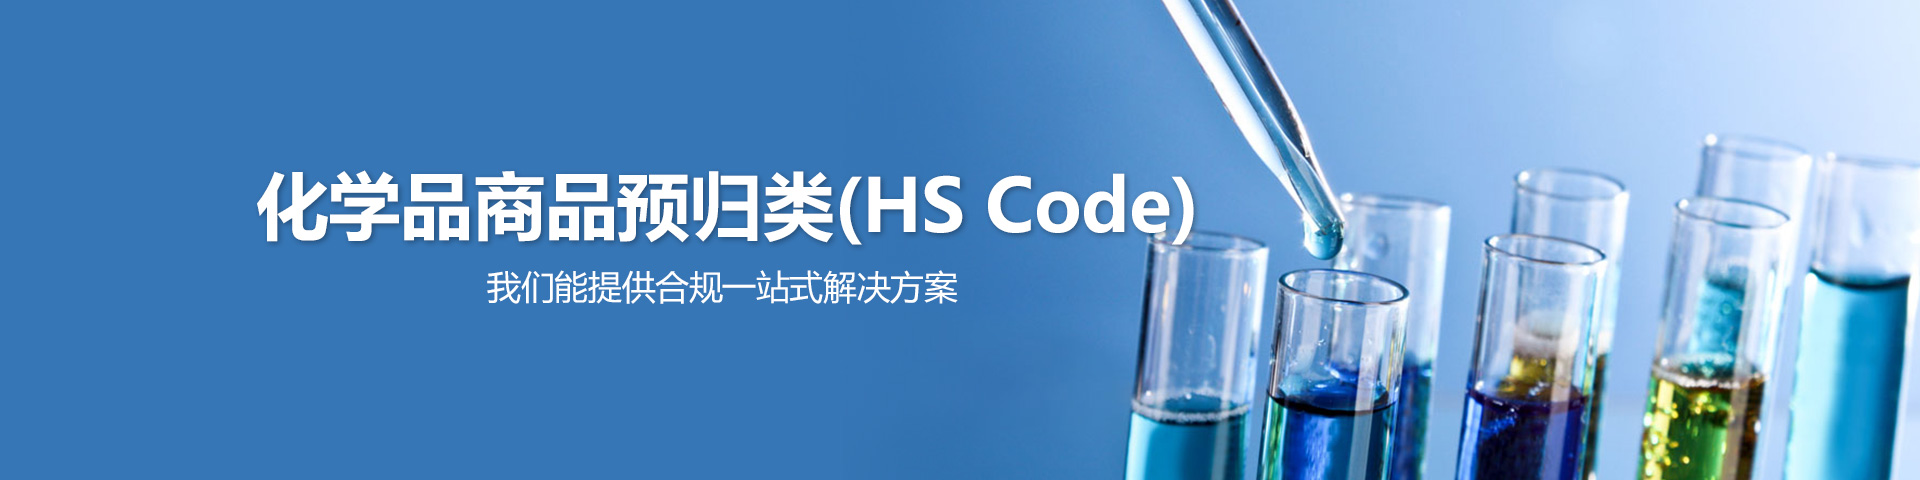 化学品商品预归类(HS Code)